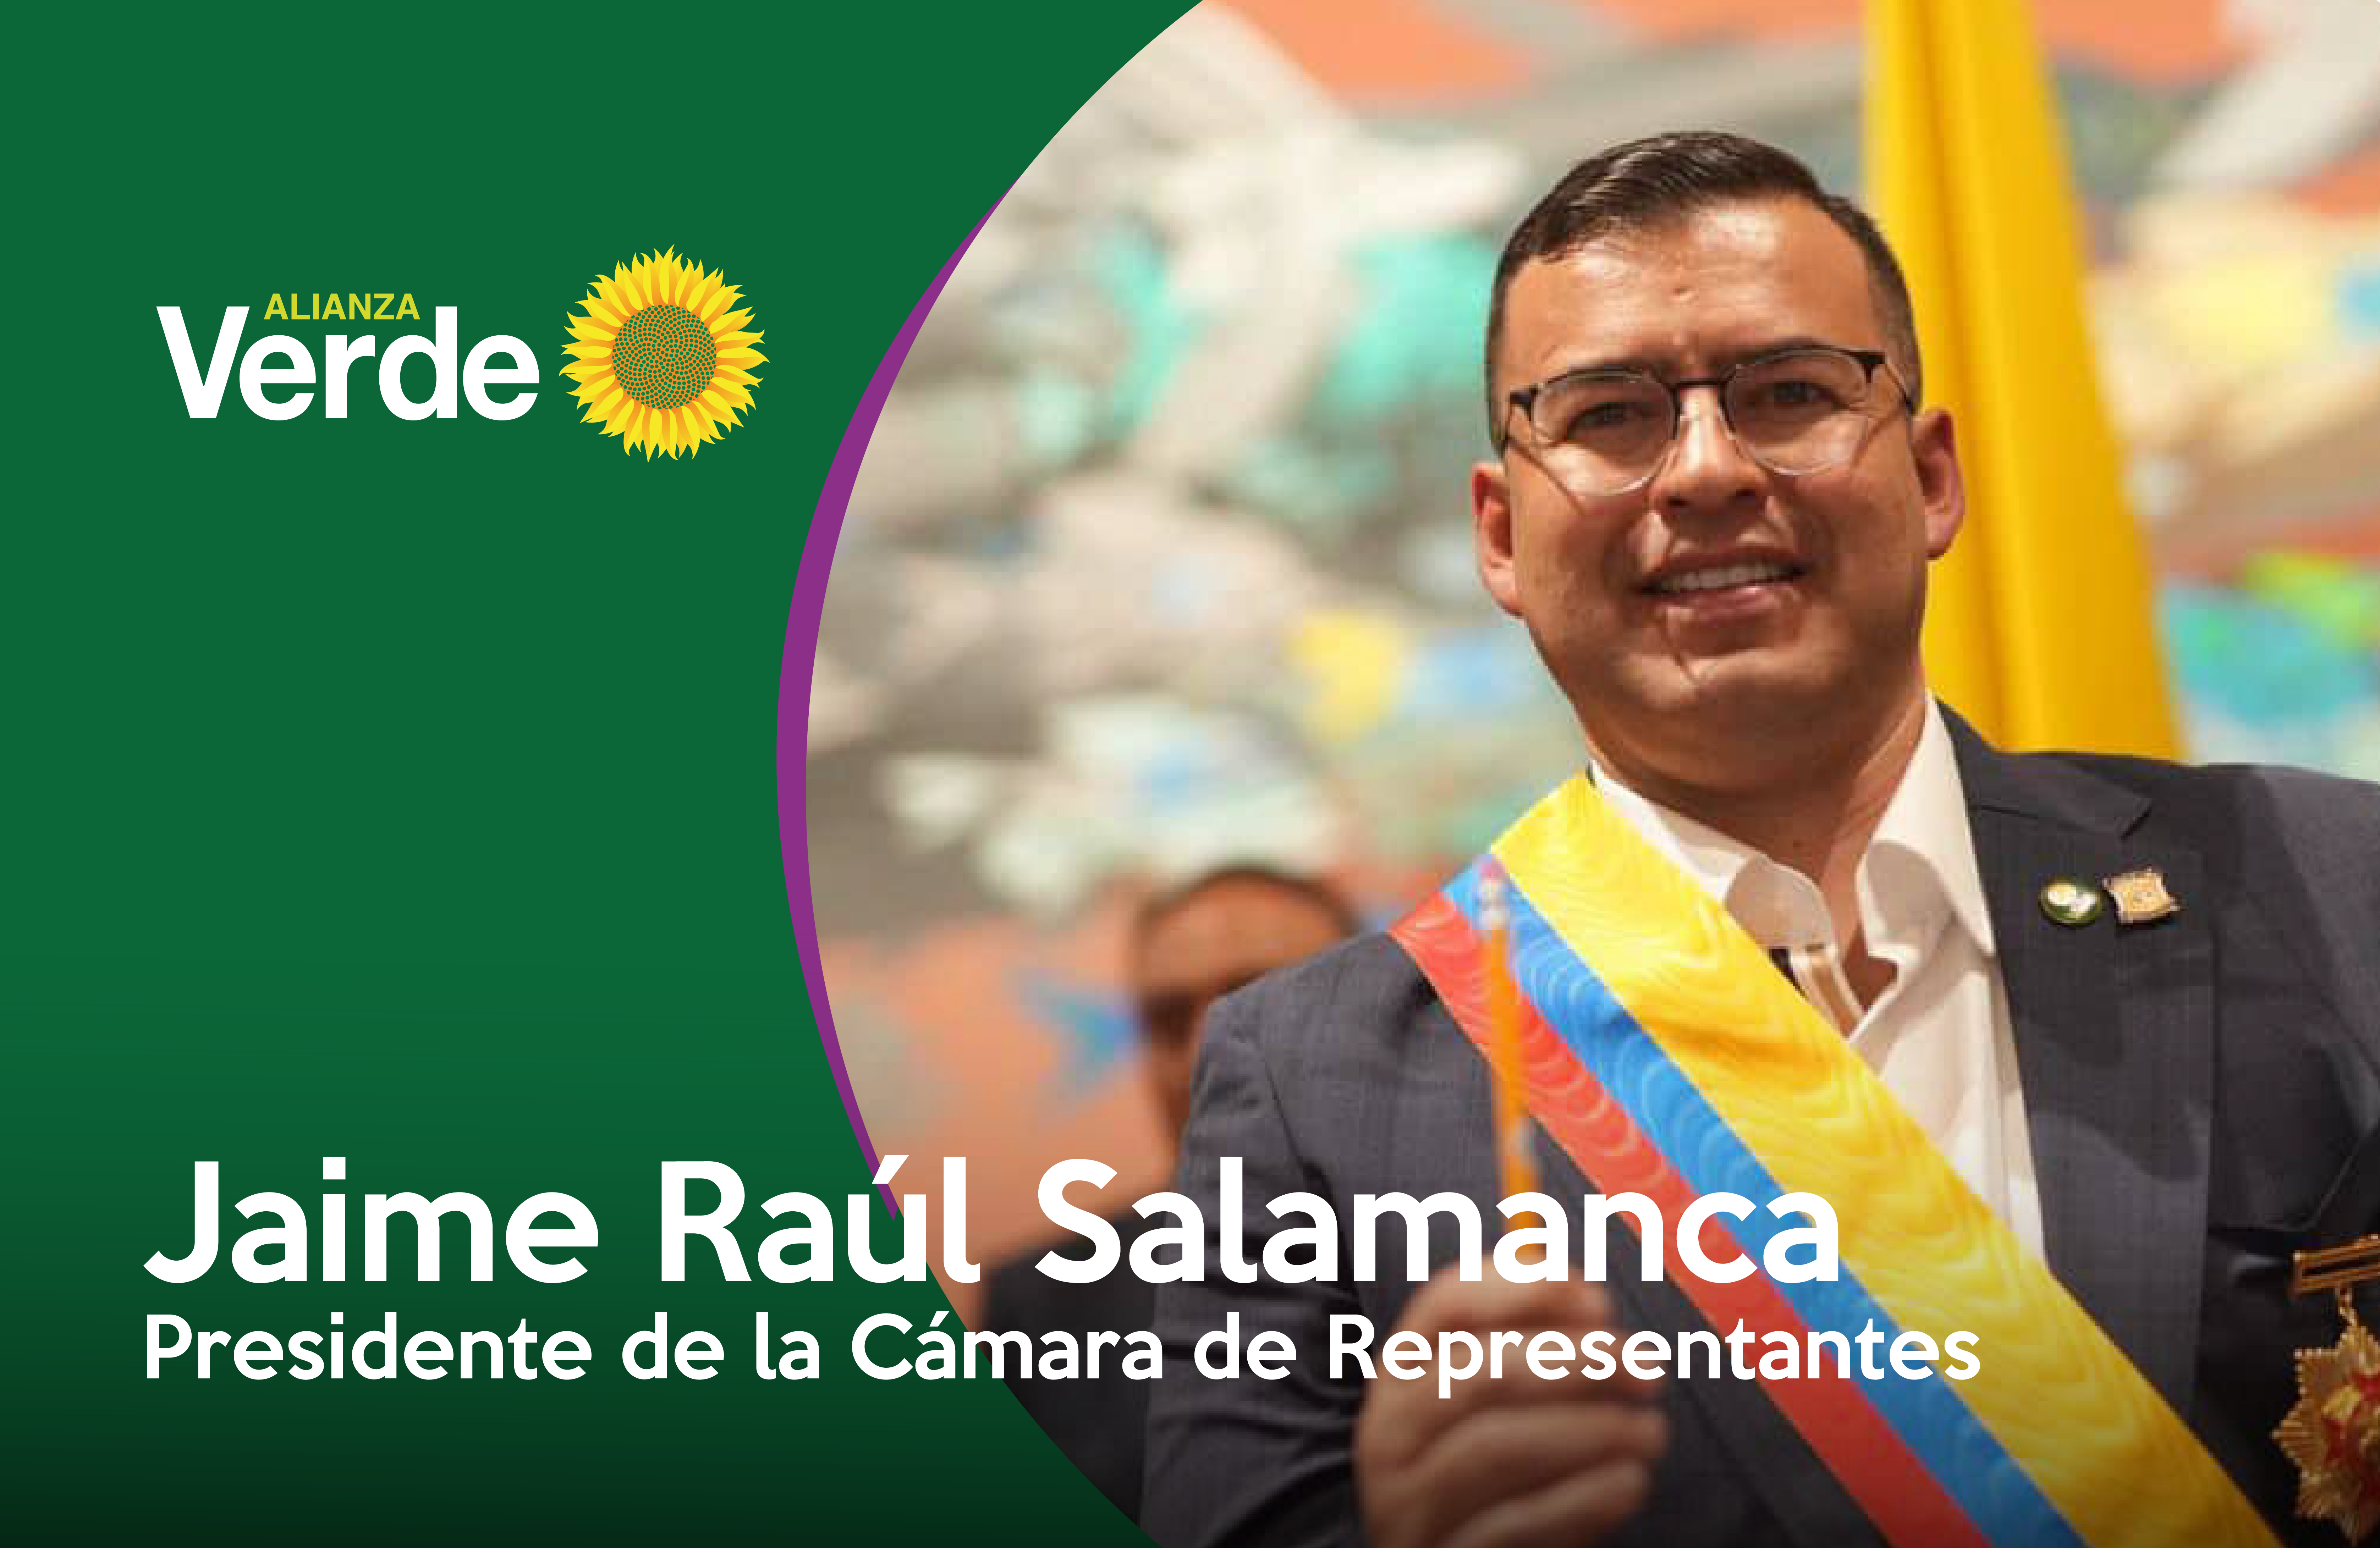 Saludamos elección de nuestro Representante a la Cámara Jaime Raúl Salamanca como Presidente de la Cámara de Representantes 